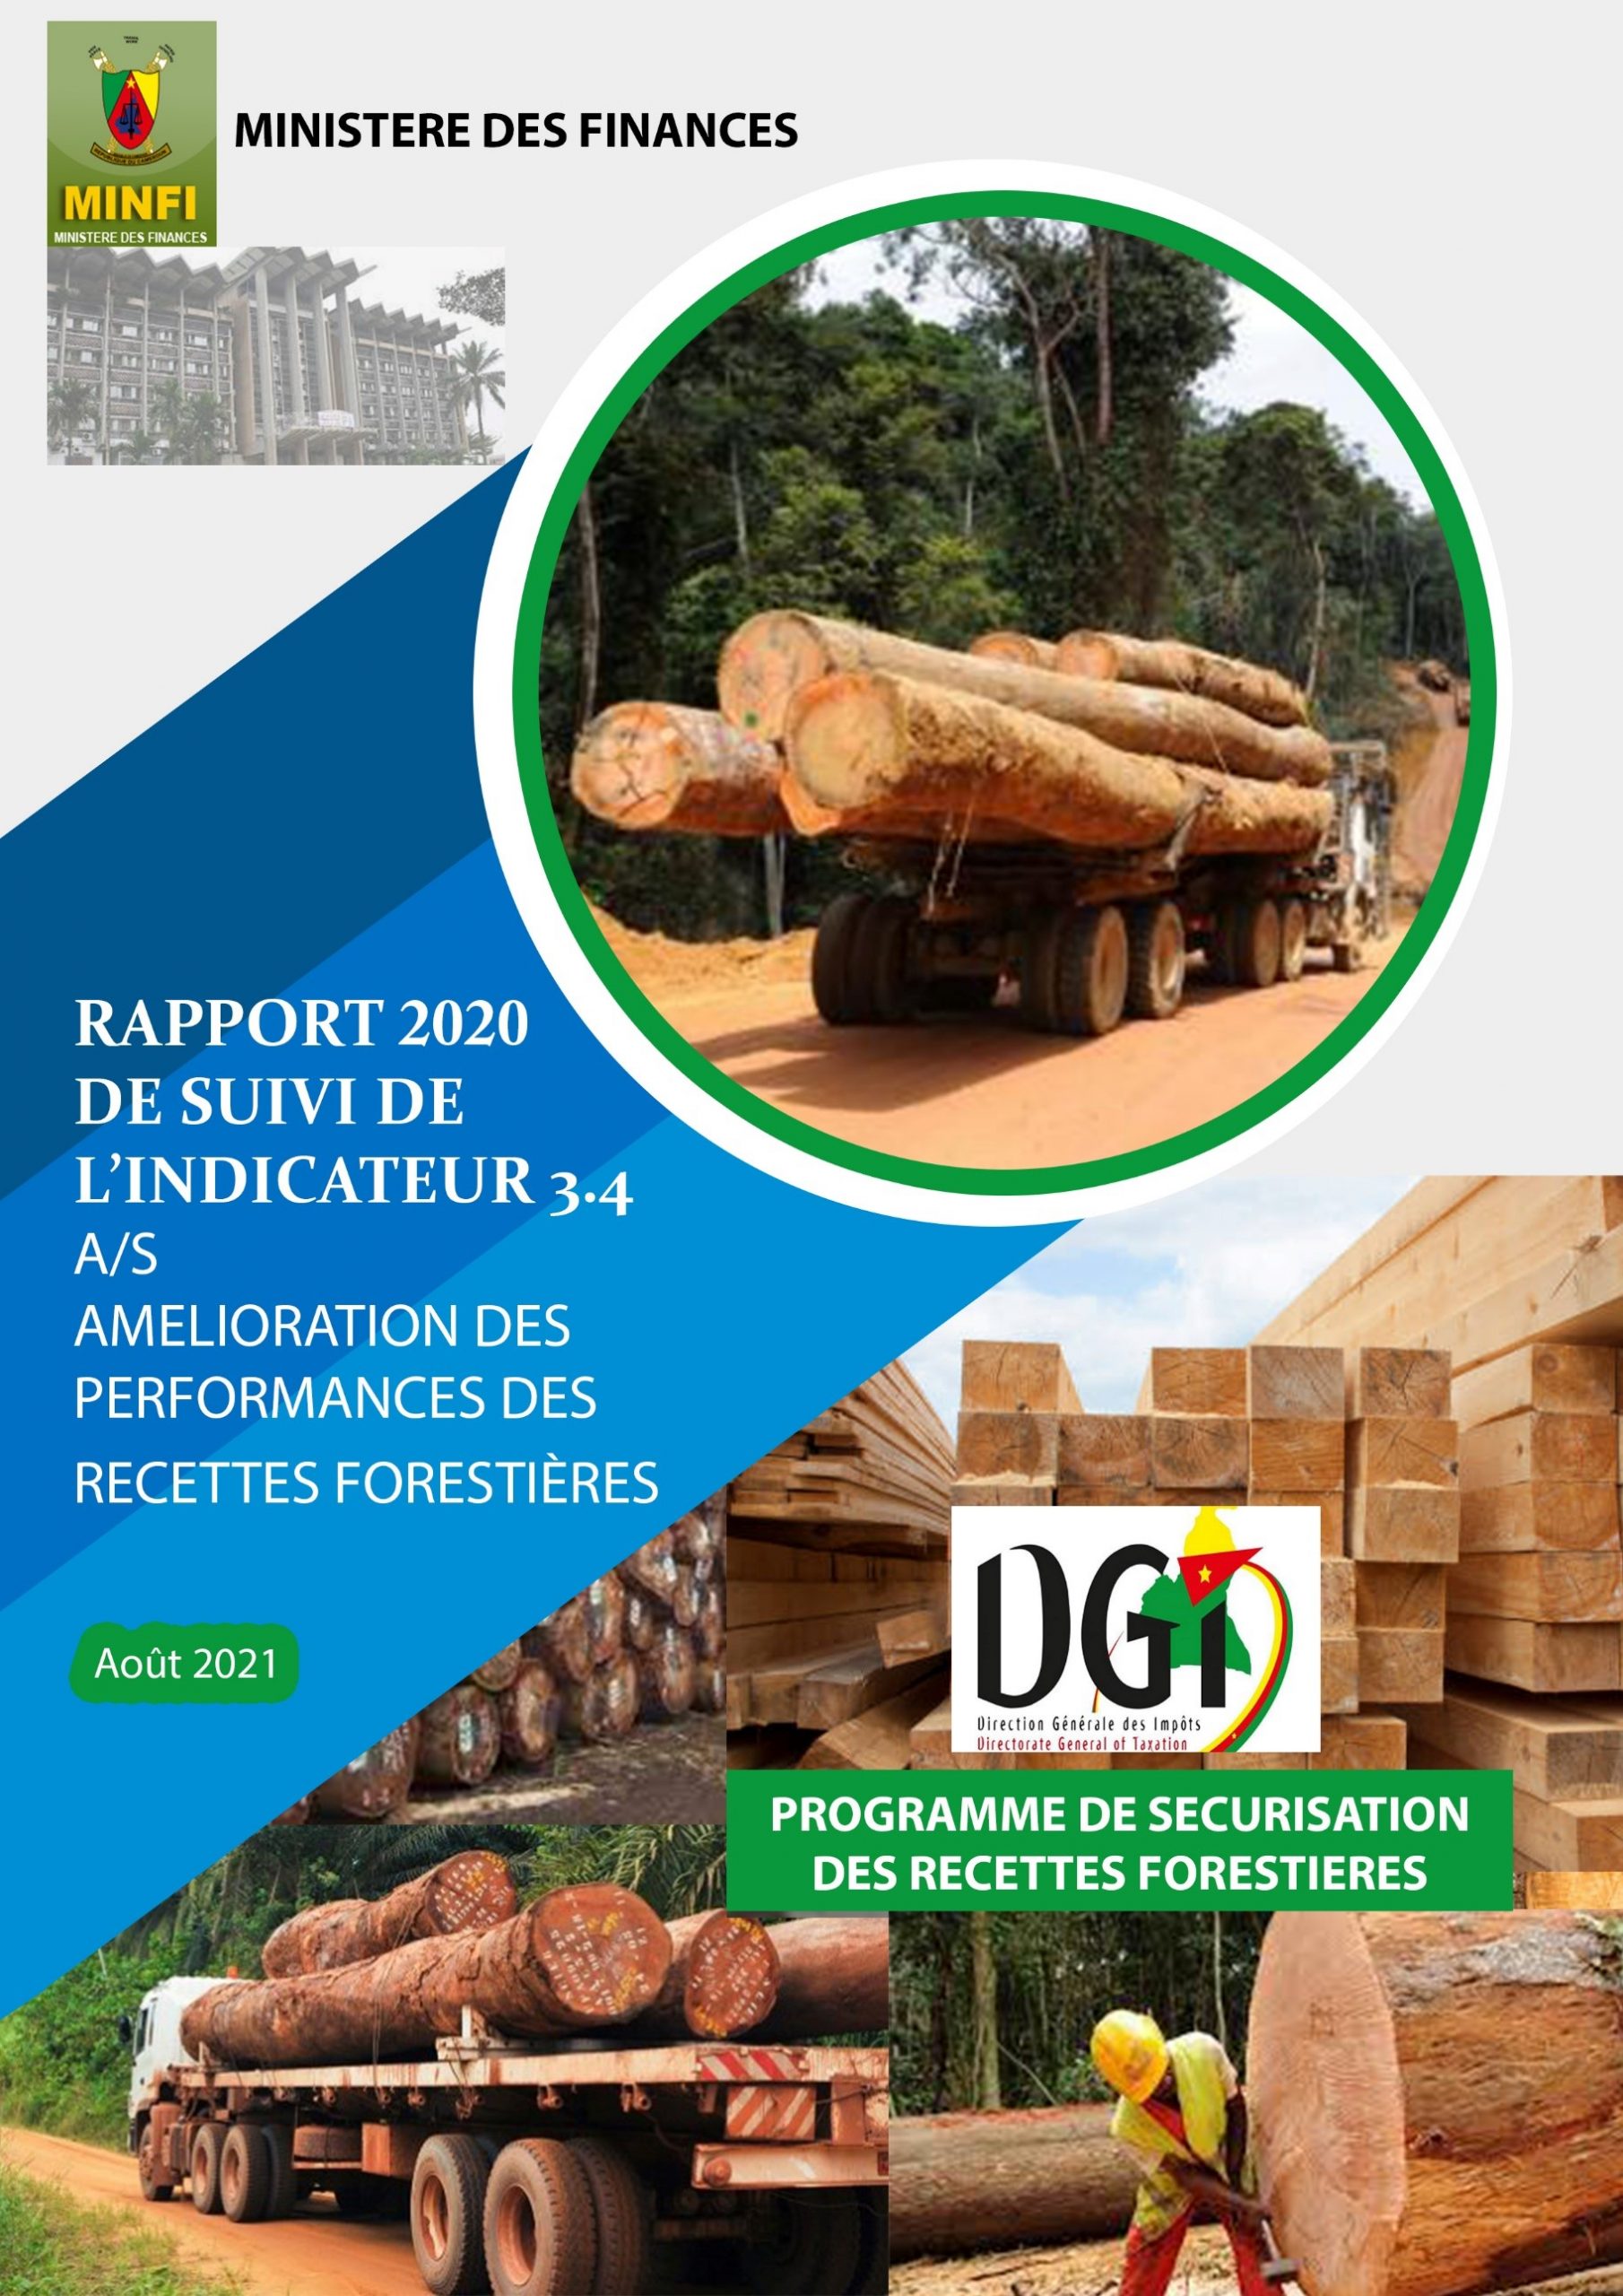 RAPPORT 2020 DE SUIVI DE L'INDICATEUR 3.4 A/S AMELIORATION DES RECETTES FORESTIERES AOUT 2021